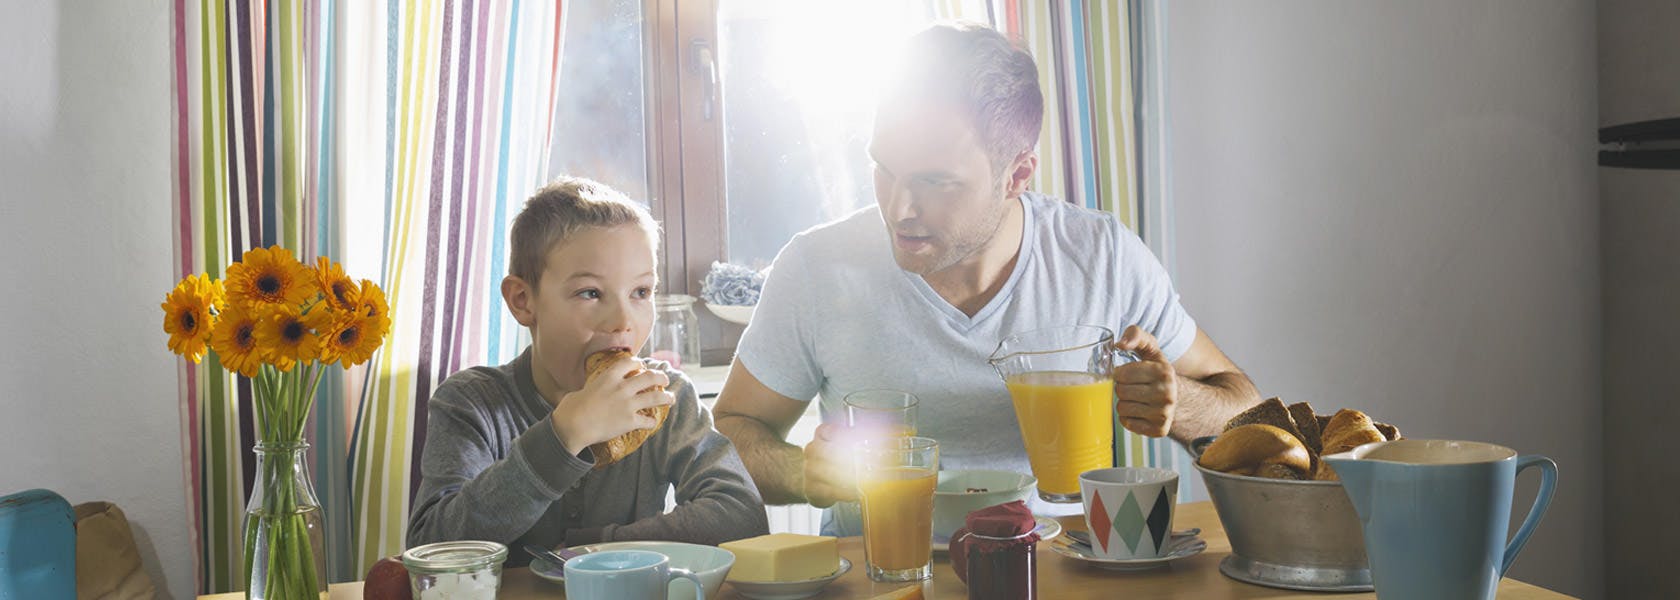 Un padre y su hijo toman un desayuno saludable.